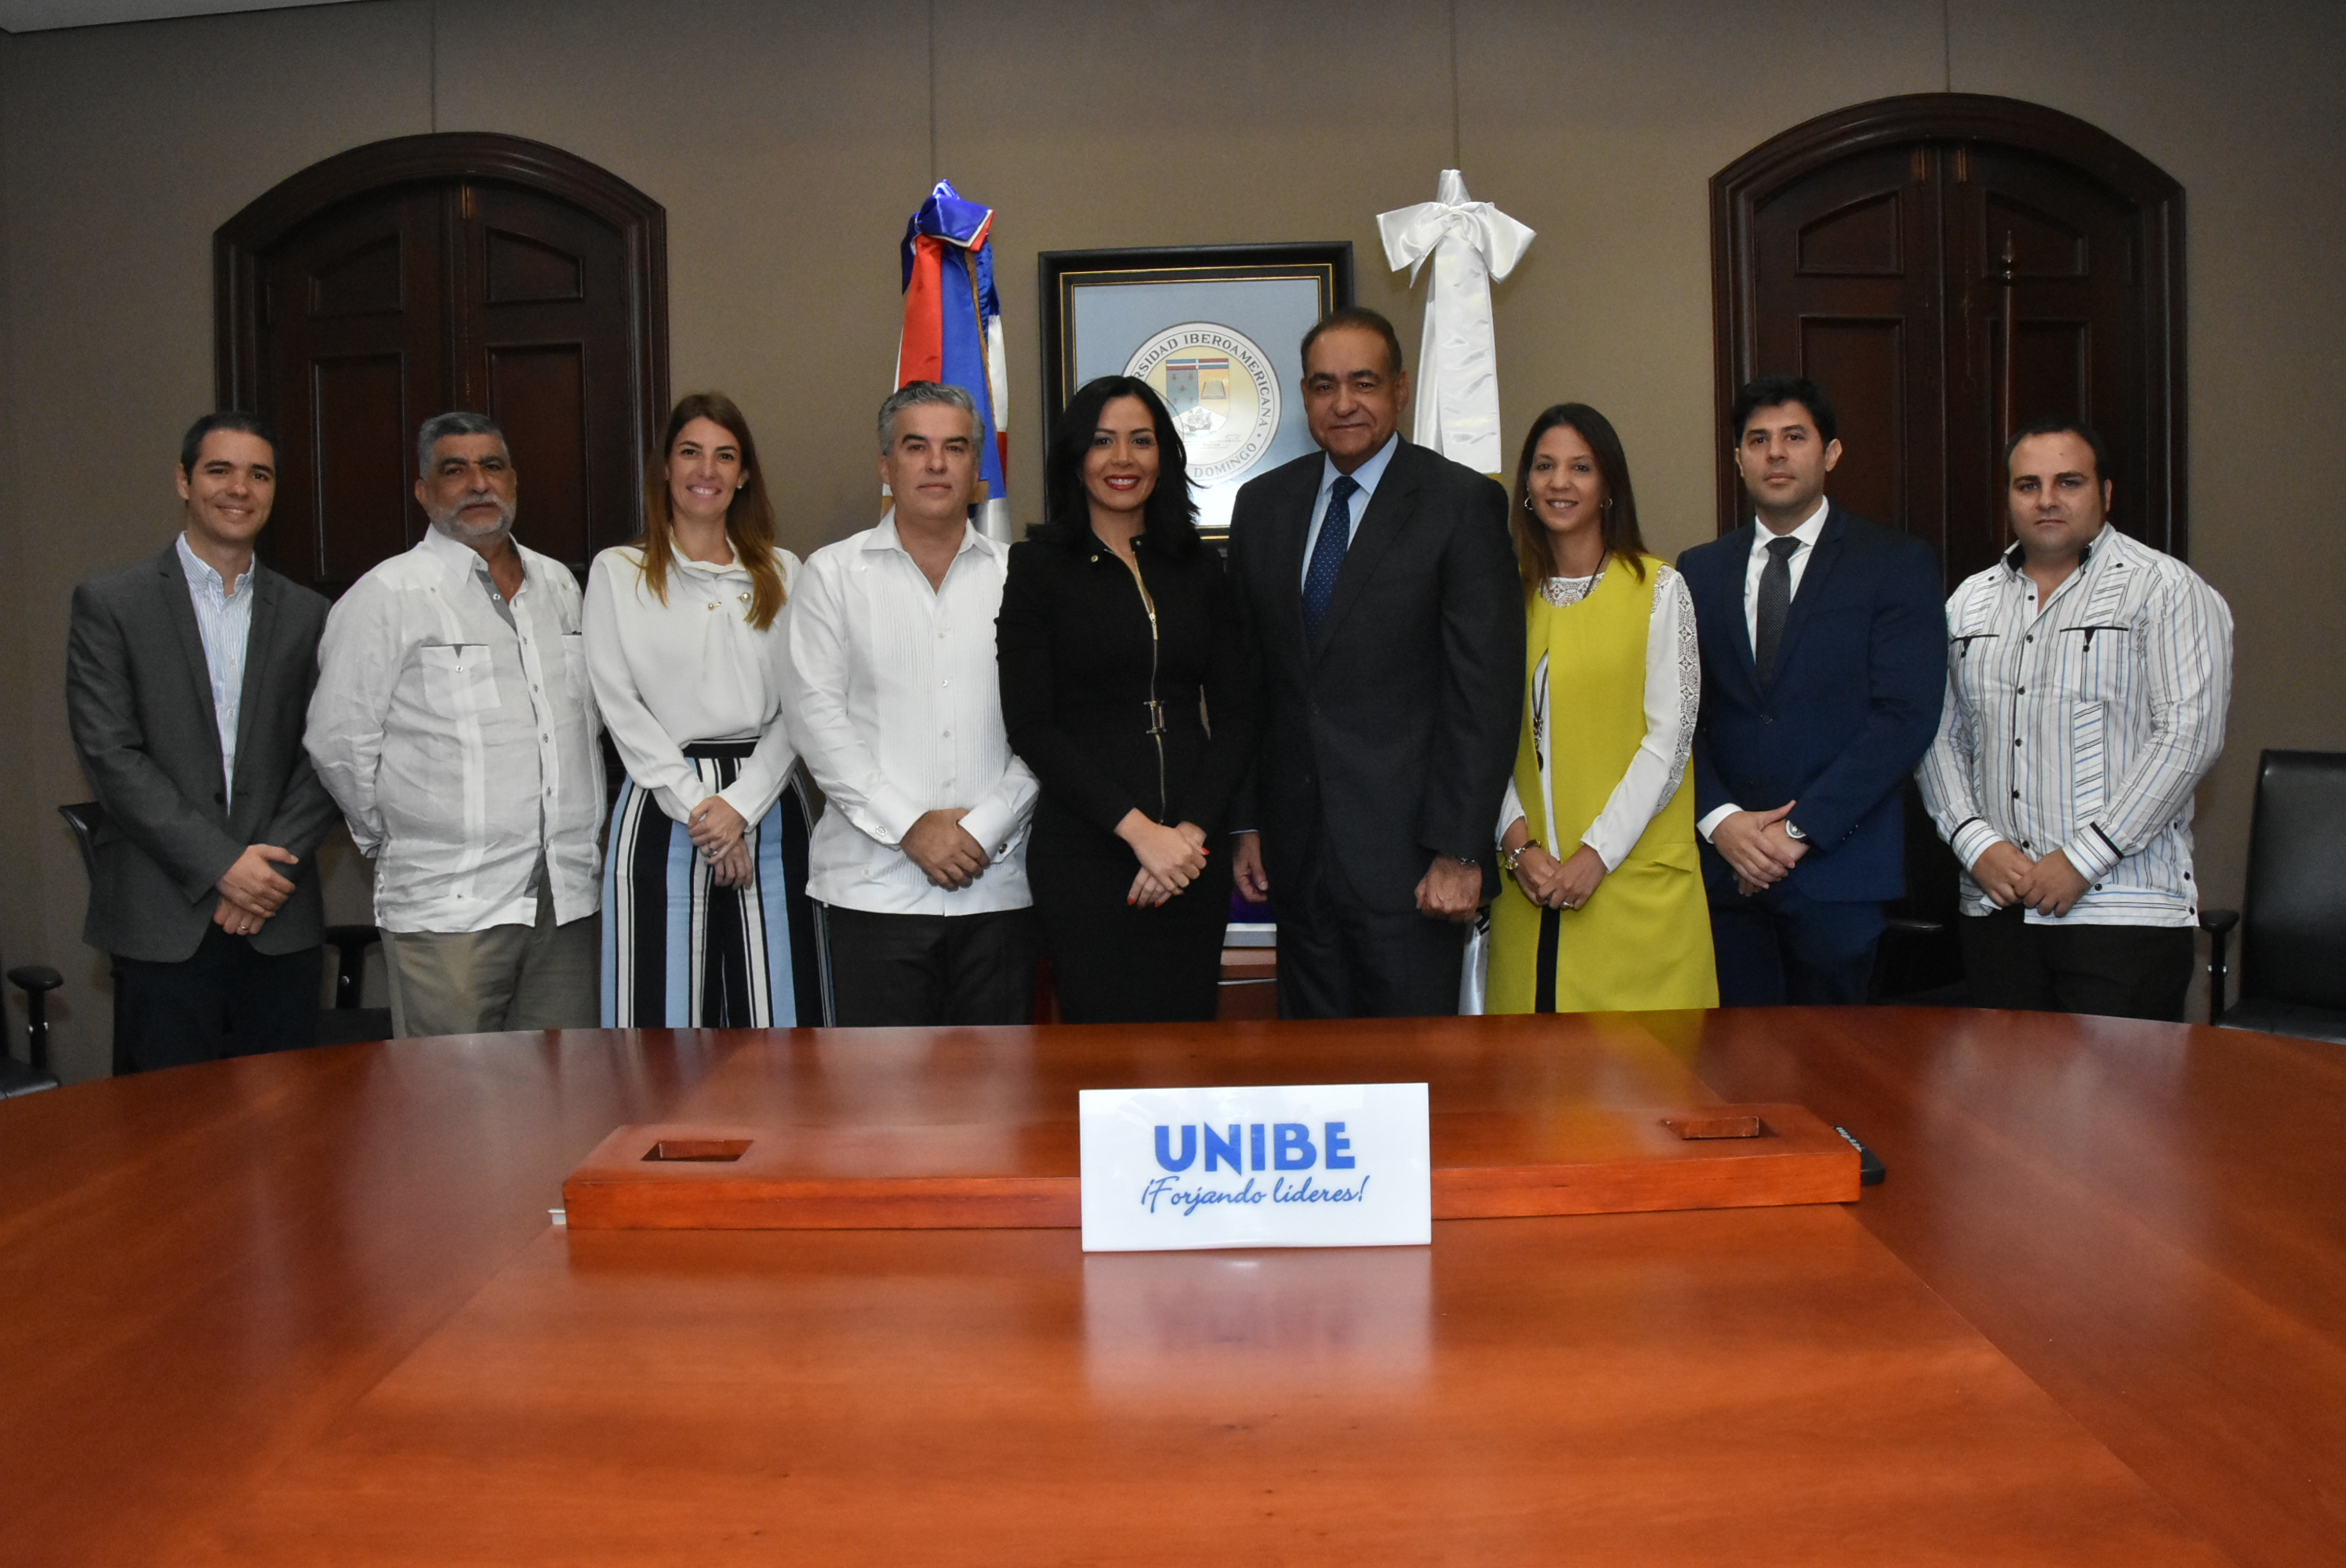  Unibe y Construger firman acuerdo de colaboración